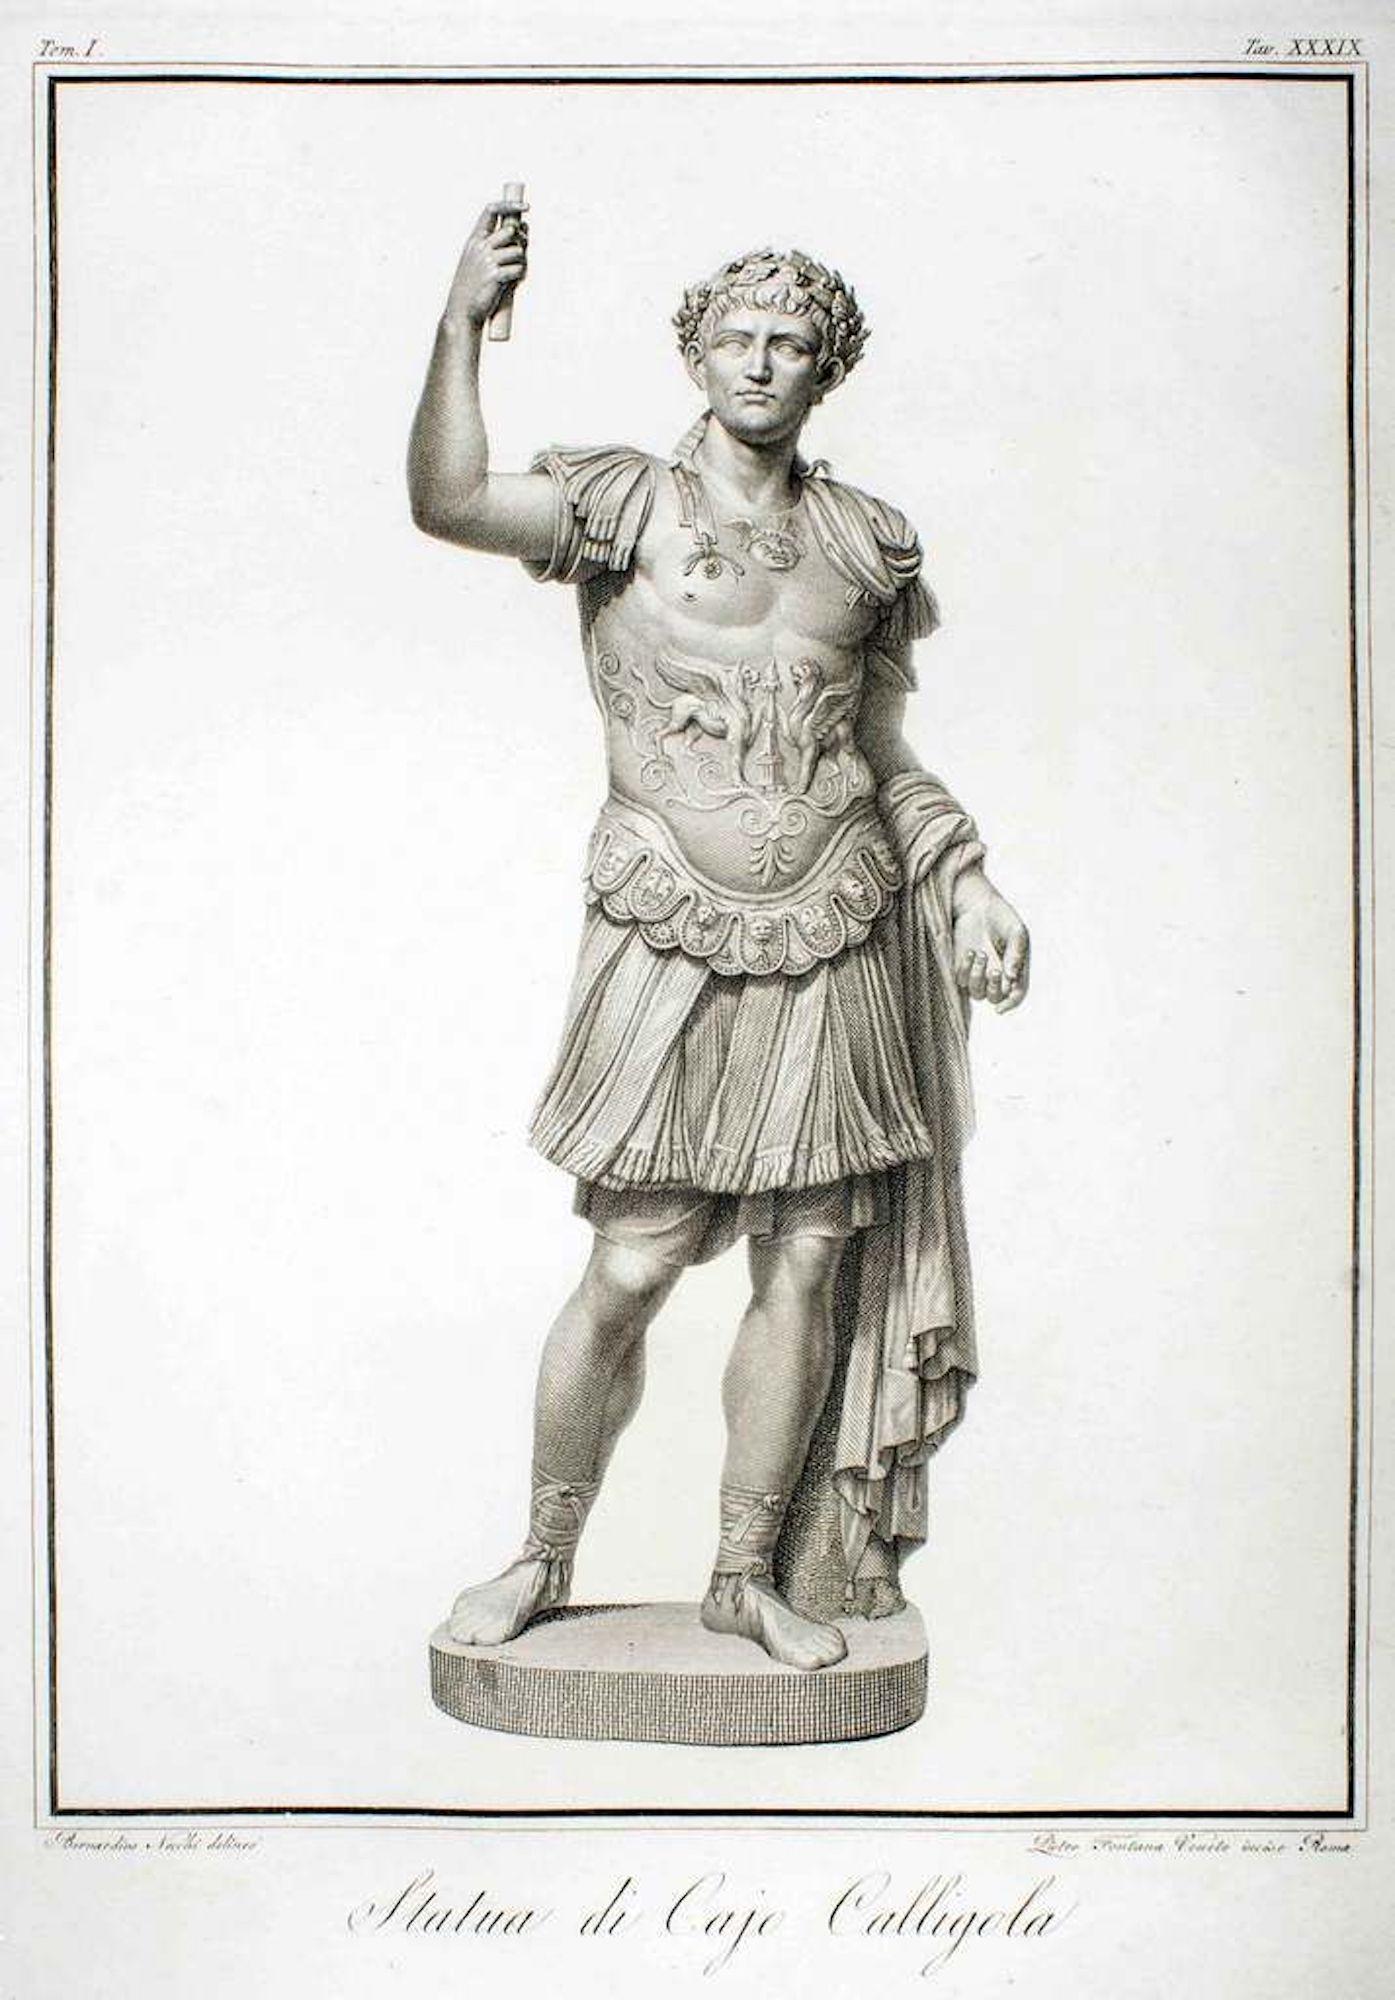 Pietro Fontana Figurative Print - Statue of Calligola - Original Etching by P. Fontana After B.Nocchi - 1794